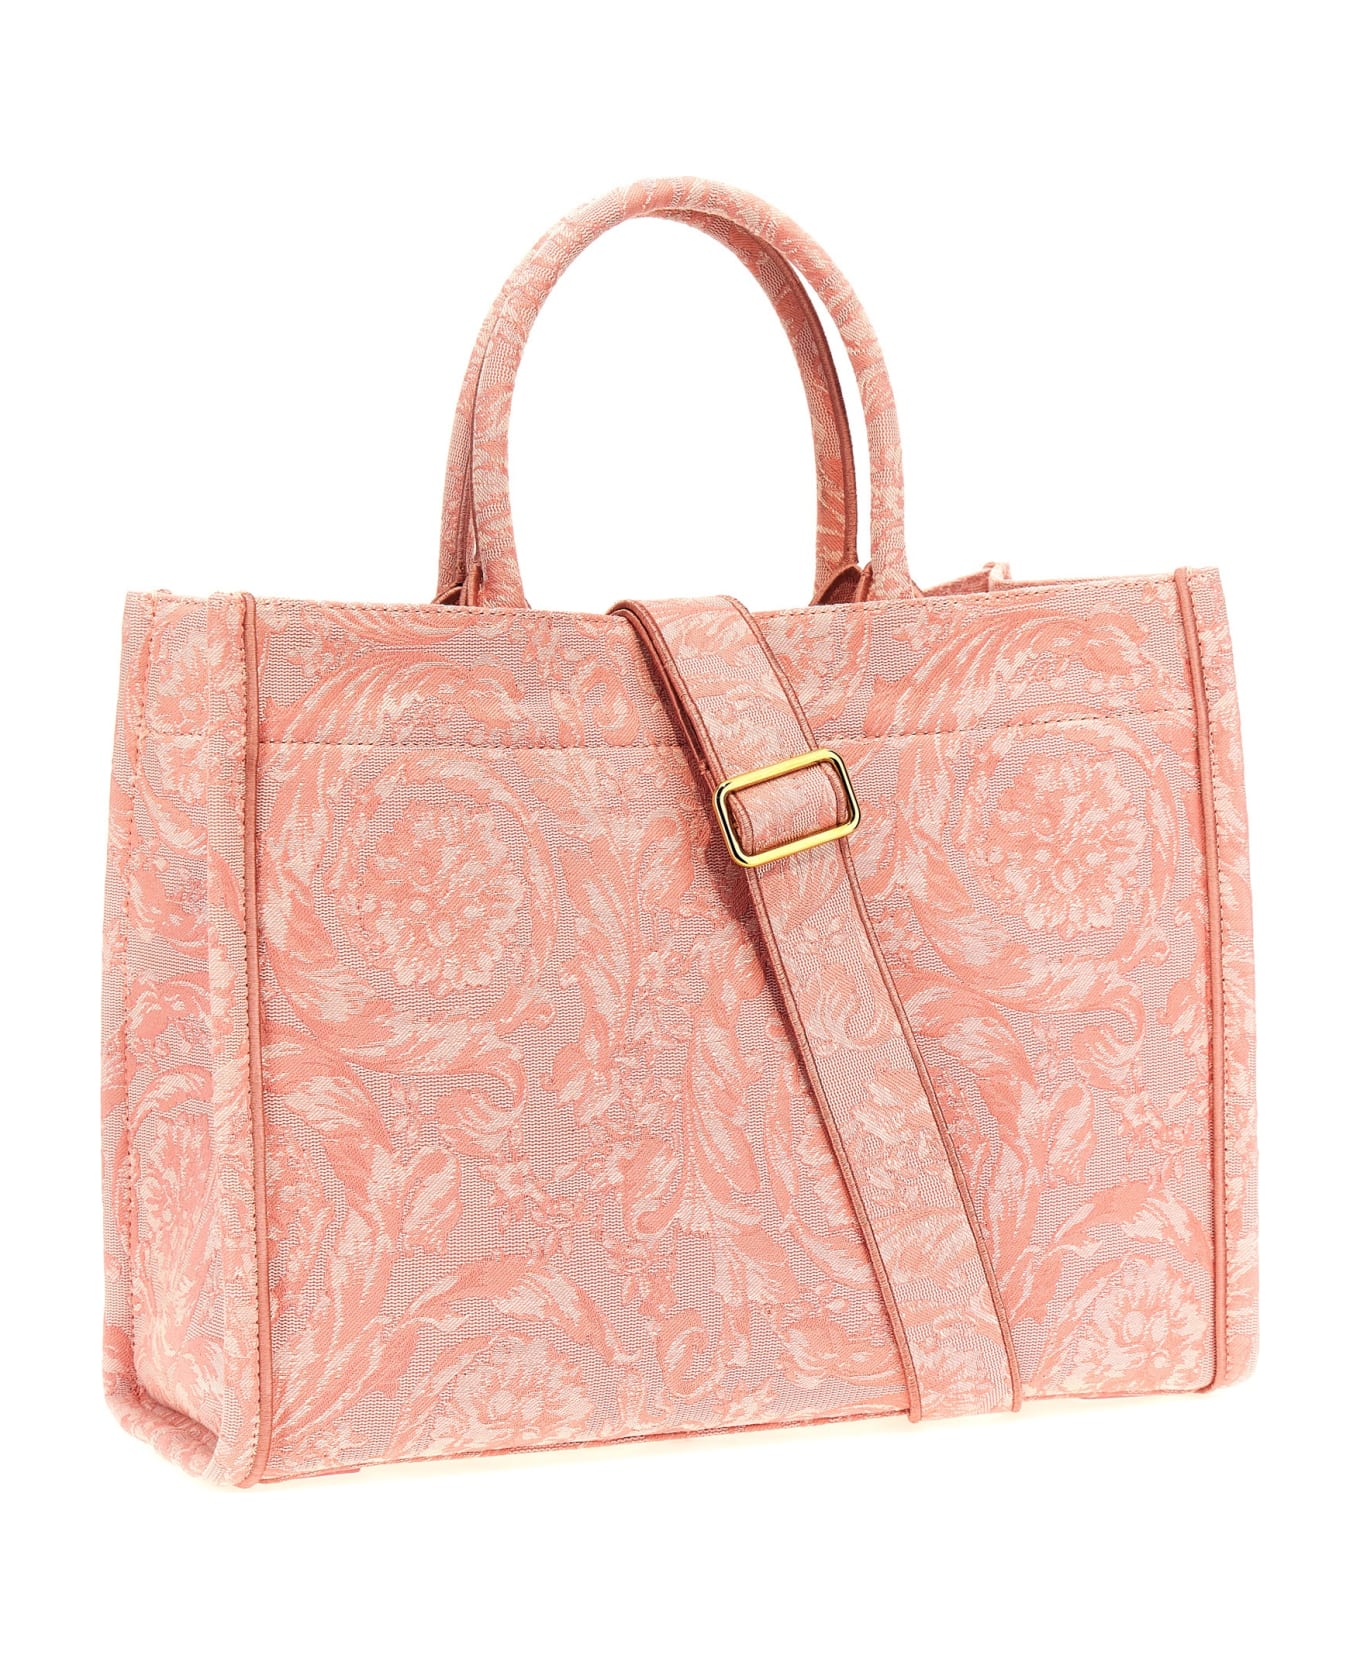 Versace 'athena Barocco' Shopping Bag - Pink